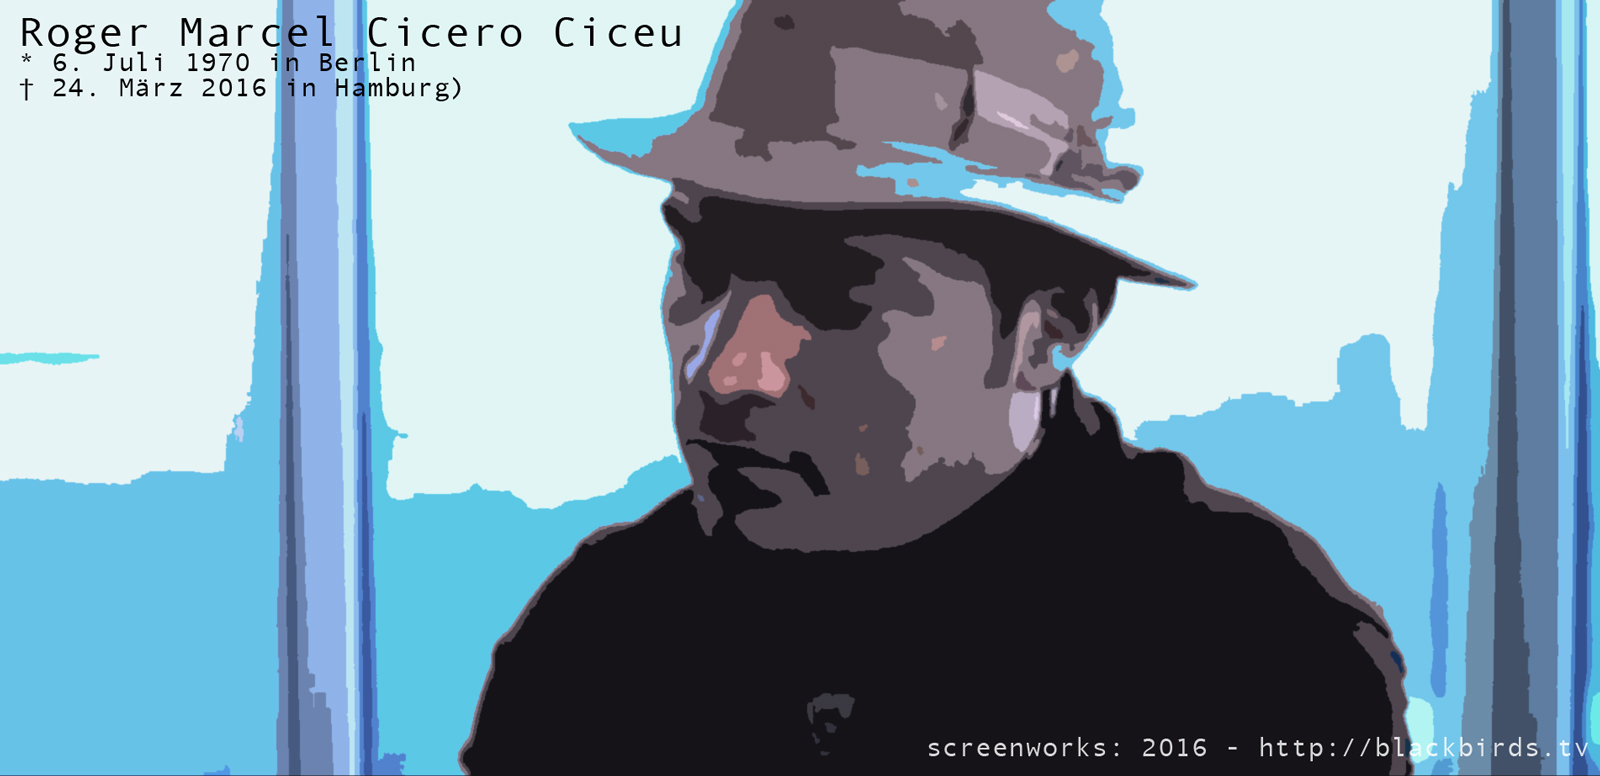 Roger Marcel Cicero Ciceu (* 6. Juli 1970 in Berlin; ­† 24. März 2016 in Hamburg)